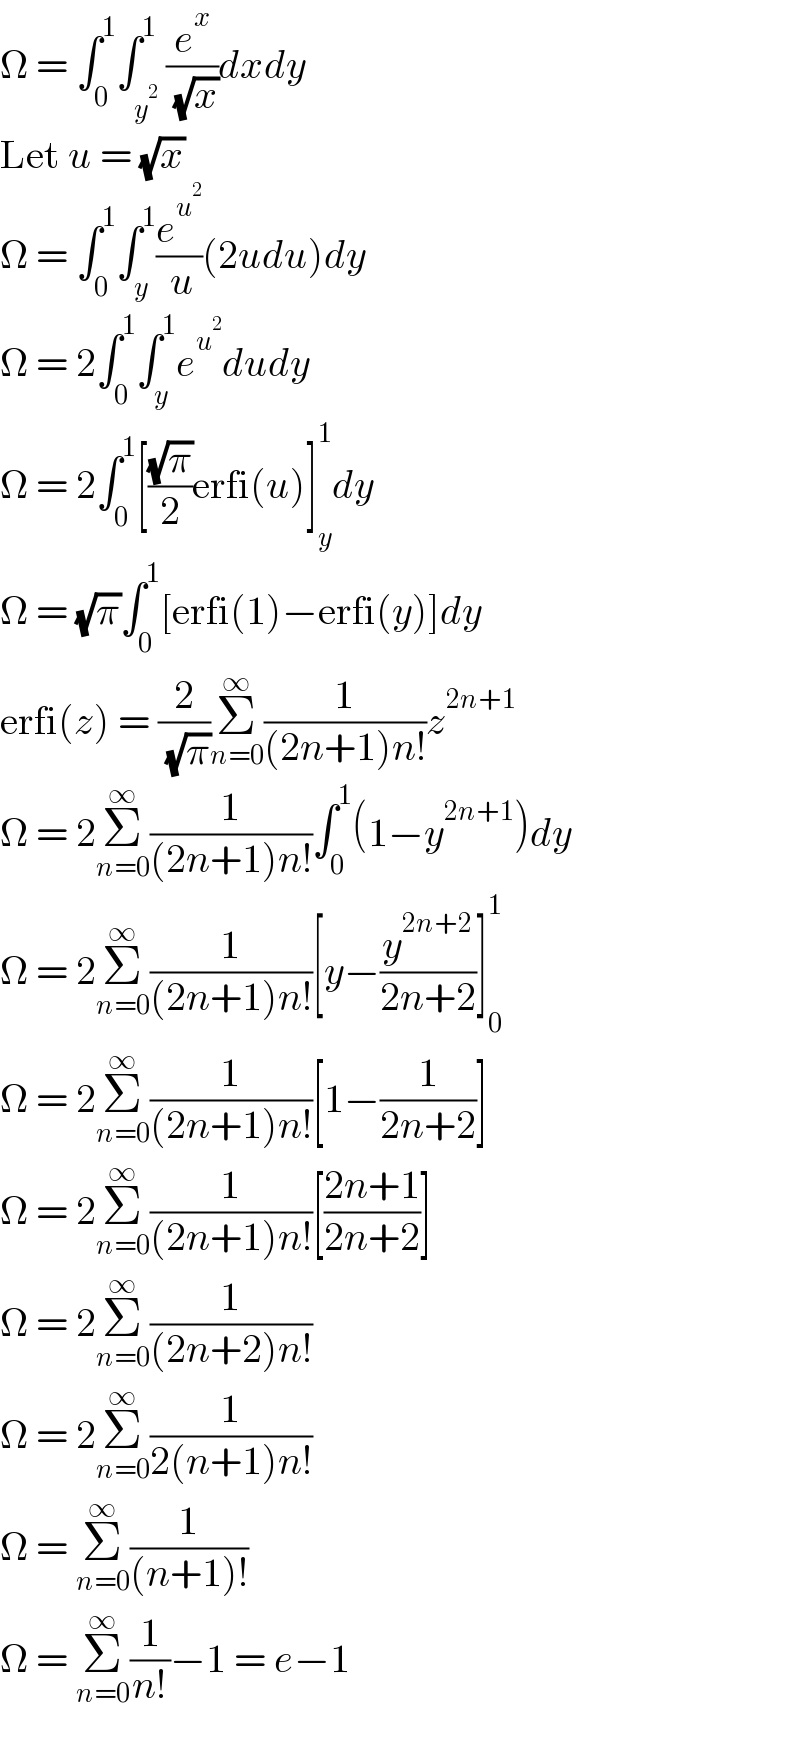 Ω = ∫_0 ^1 ∫_y^2  ^1 (e^x /( (√x)))dxdy  Let u = (√x)  Ω = ∫_0 ^1 ∫_y ^1 (e^u^2  /( u))(2udu)dy  Ω = 2∫_0 ^1 ∫_y ^1 e^u^2  dudy  Ω = 2∫_0 ^1 [((√π)/2)erfi(u)]_y ^1 dy  Ω = (√π)∫_0 ^1 [erfi(1)−erfi(y)]dy  erfi(z) = (2/( (√π)))Σ_(n=0) ^∞ (1/((2n+1)n!))z^(2n+1)   Ω = 2Σ_(n=0) ^∞ (1/((2n+1)n!))∫_0 ^1 (1−y^(2n+1) )dy  Ω = 2Σ_(n=0) ^∞ (1/((2n+1)n!))[y−(y^(2n+2) /(2n+2))]_0 ^1   Ω = 2Σ_(n=0) ^∞ (1/((2n+1)n!))[1−(1/(2n+2))]  Ω = 2Σ_(n=0) ^∞ (1/((2n+1)n!))[((2n+1)/(2n+2))]  Ω = 2Σ_(n=0) ^∞ (1/((2n+2)n!))  Ω = 2Σ_(n=0) ^∞ (1/(2(n+1)n!))  Ω = Σ_(n=0) ^∞ (1/((n+1)!))  Ω = Σ_(n=0) ^∞ (1/(n!))−1 = e−1  